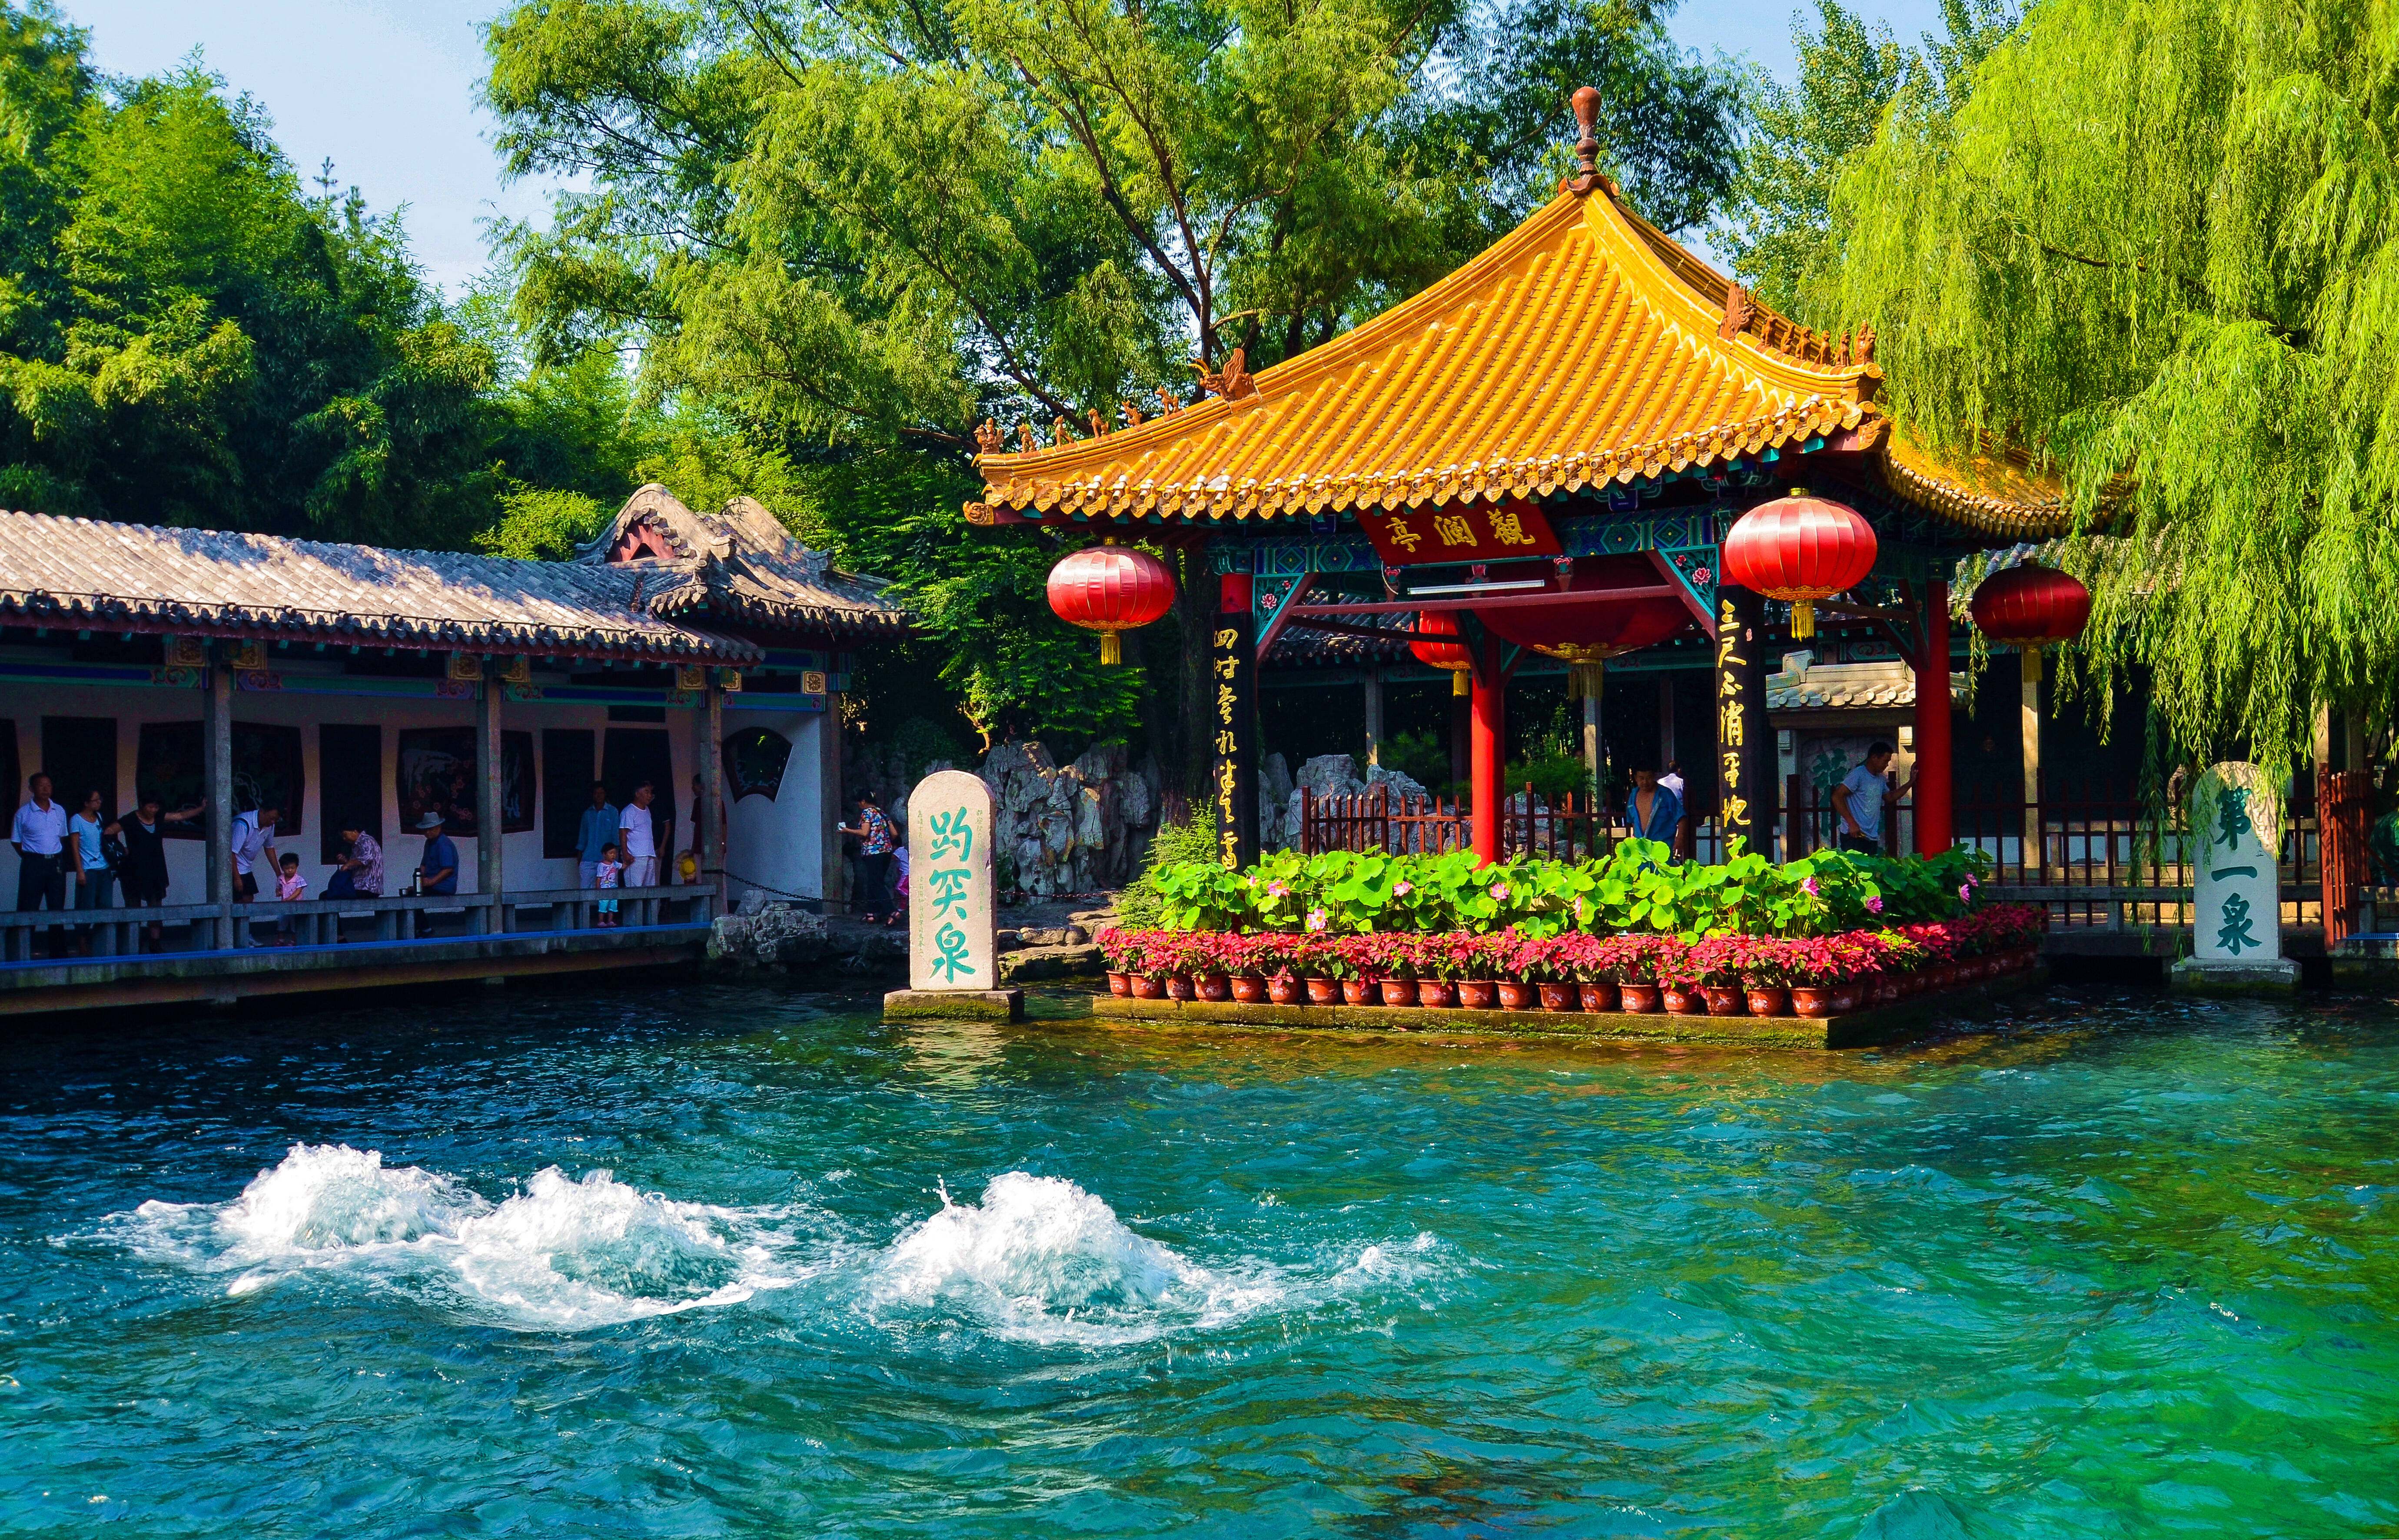 济南泉城文化景观申报中国世界文化遗产预备名单